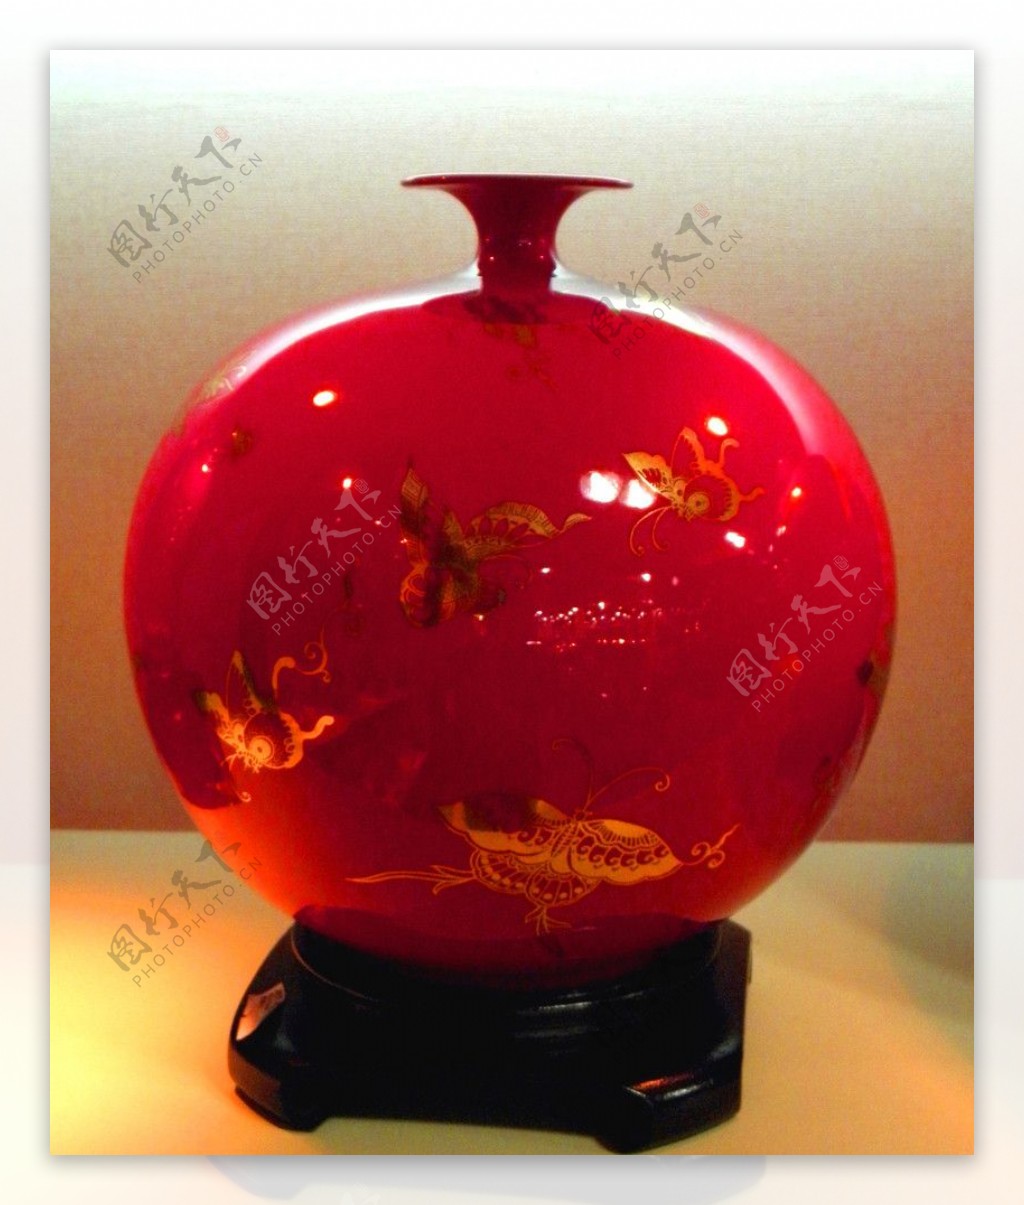 台湾红瓷花瓶图片